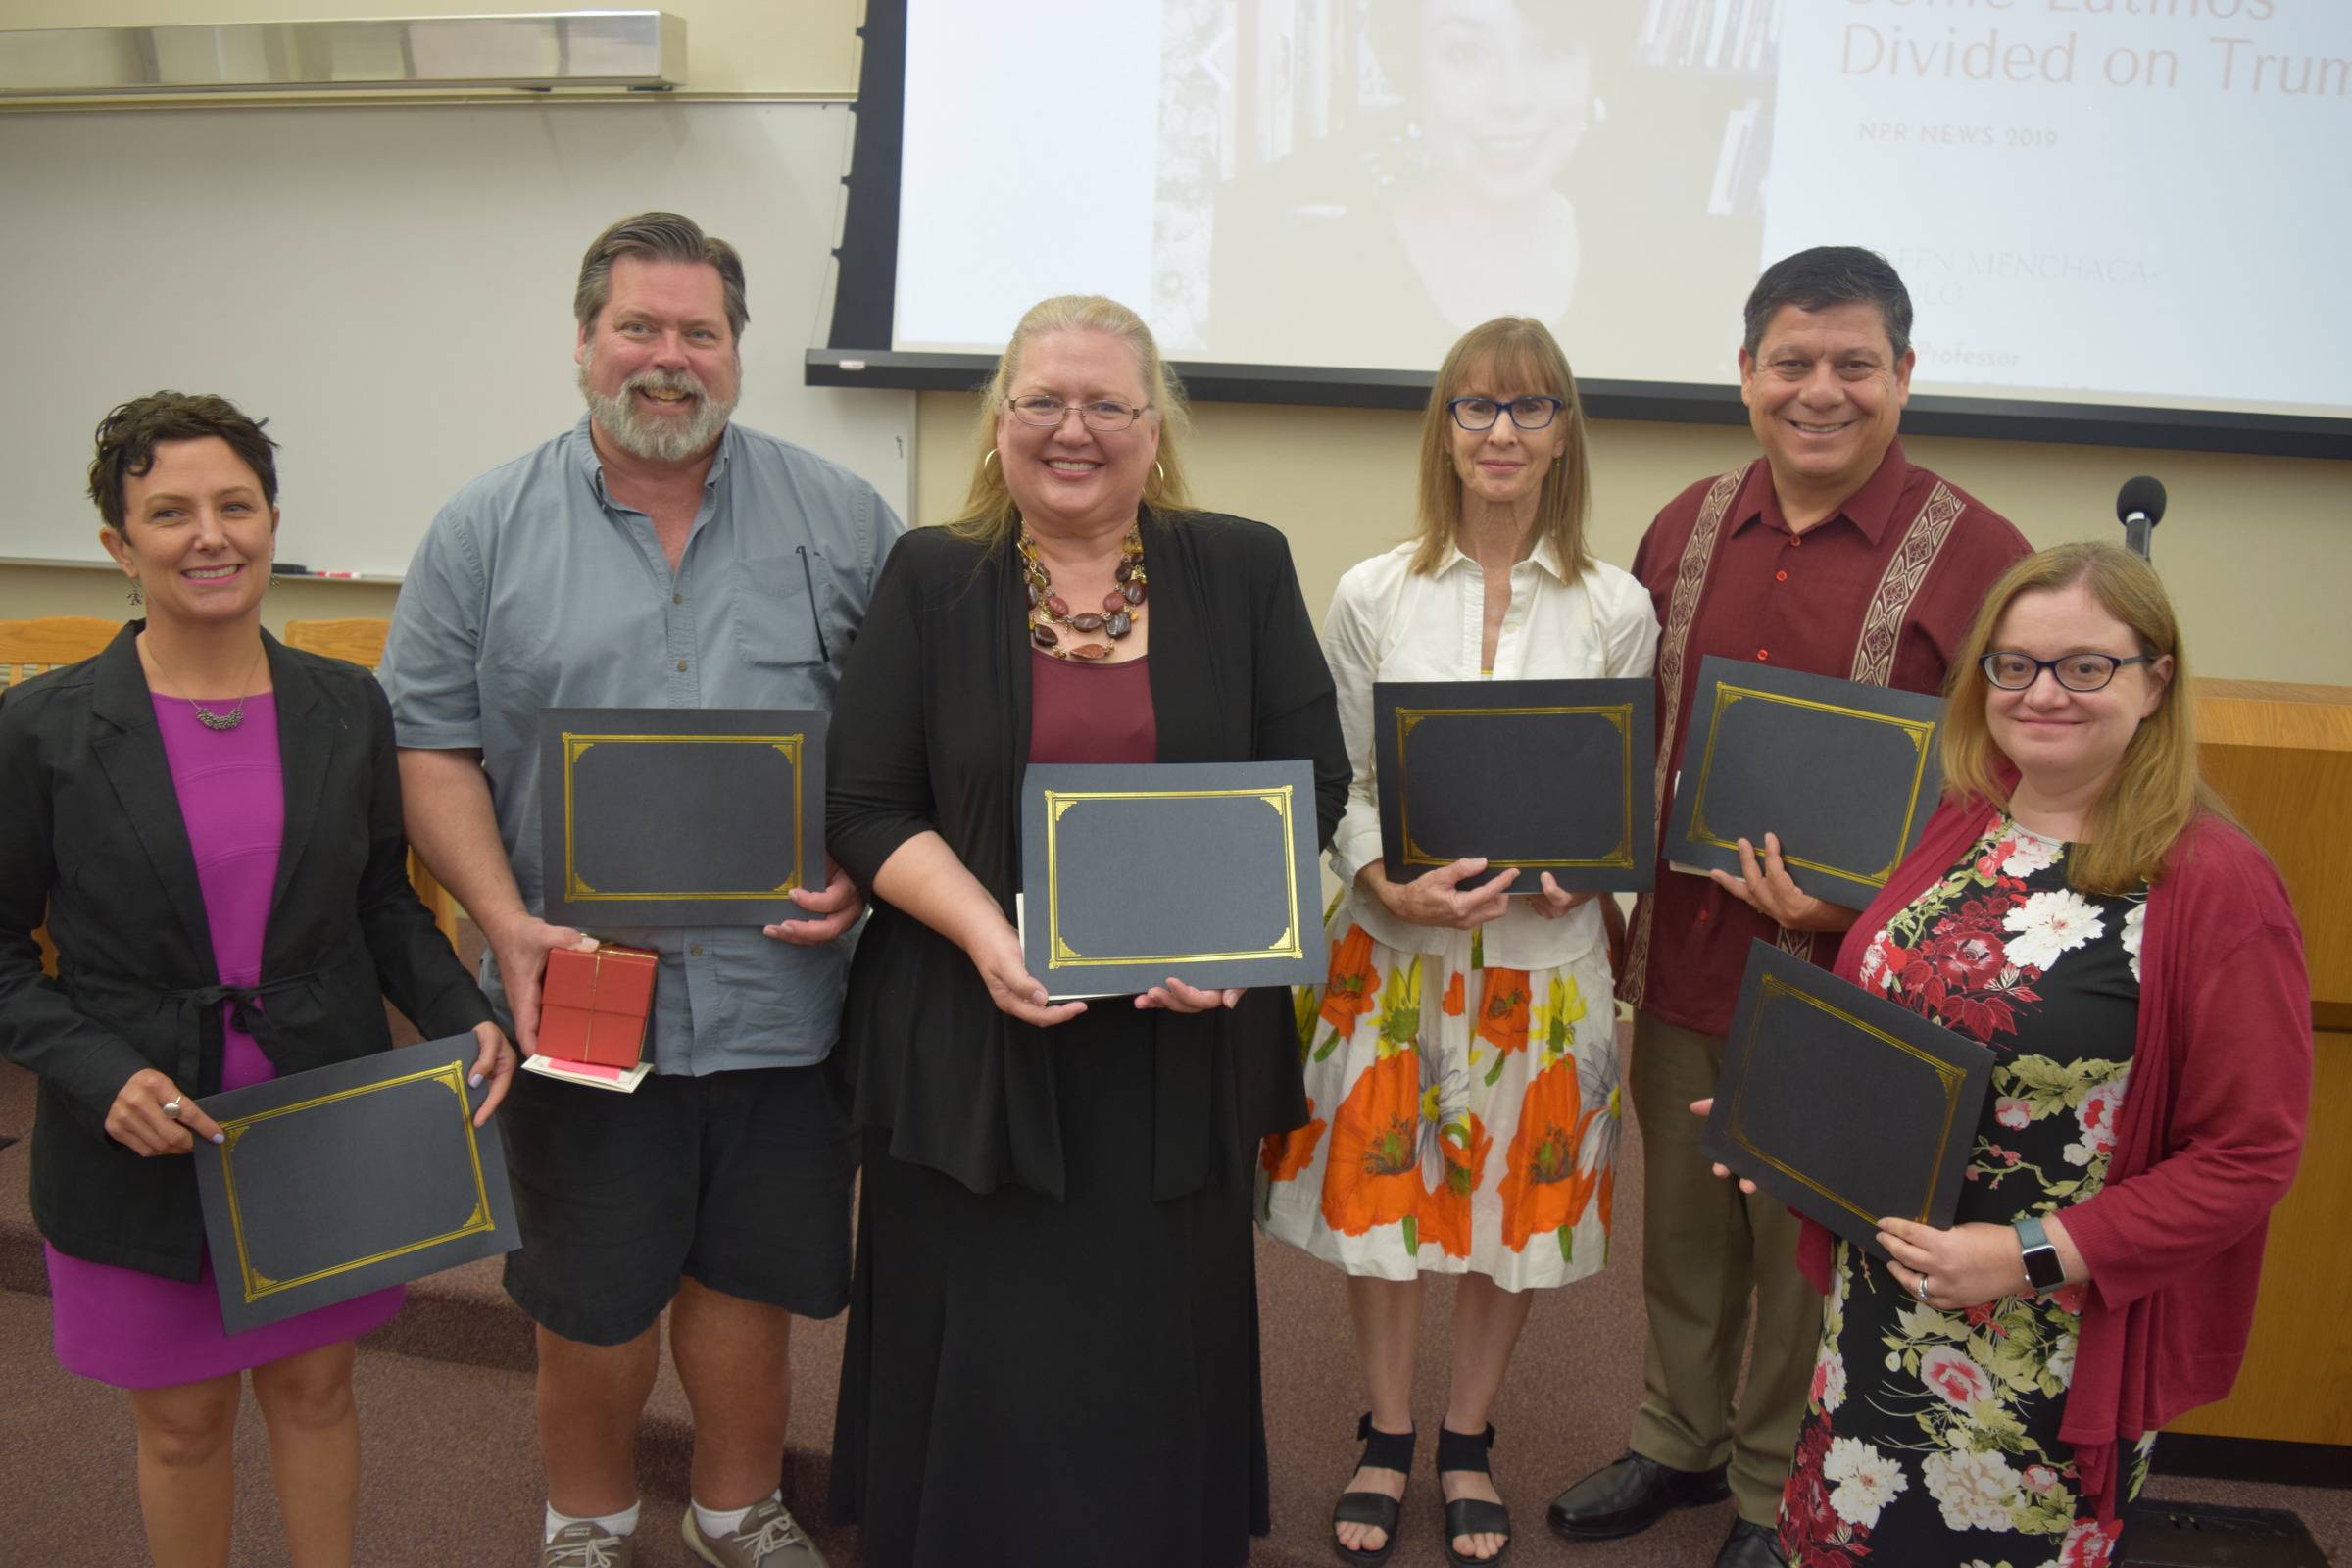 Six people holding awards